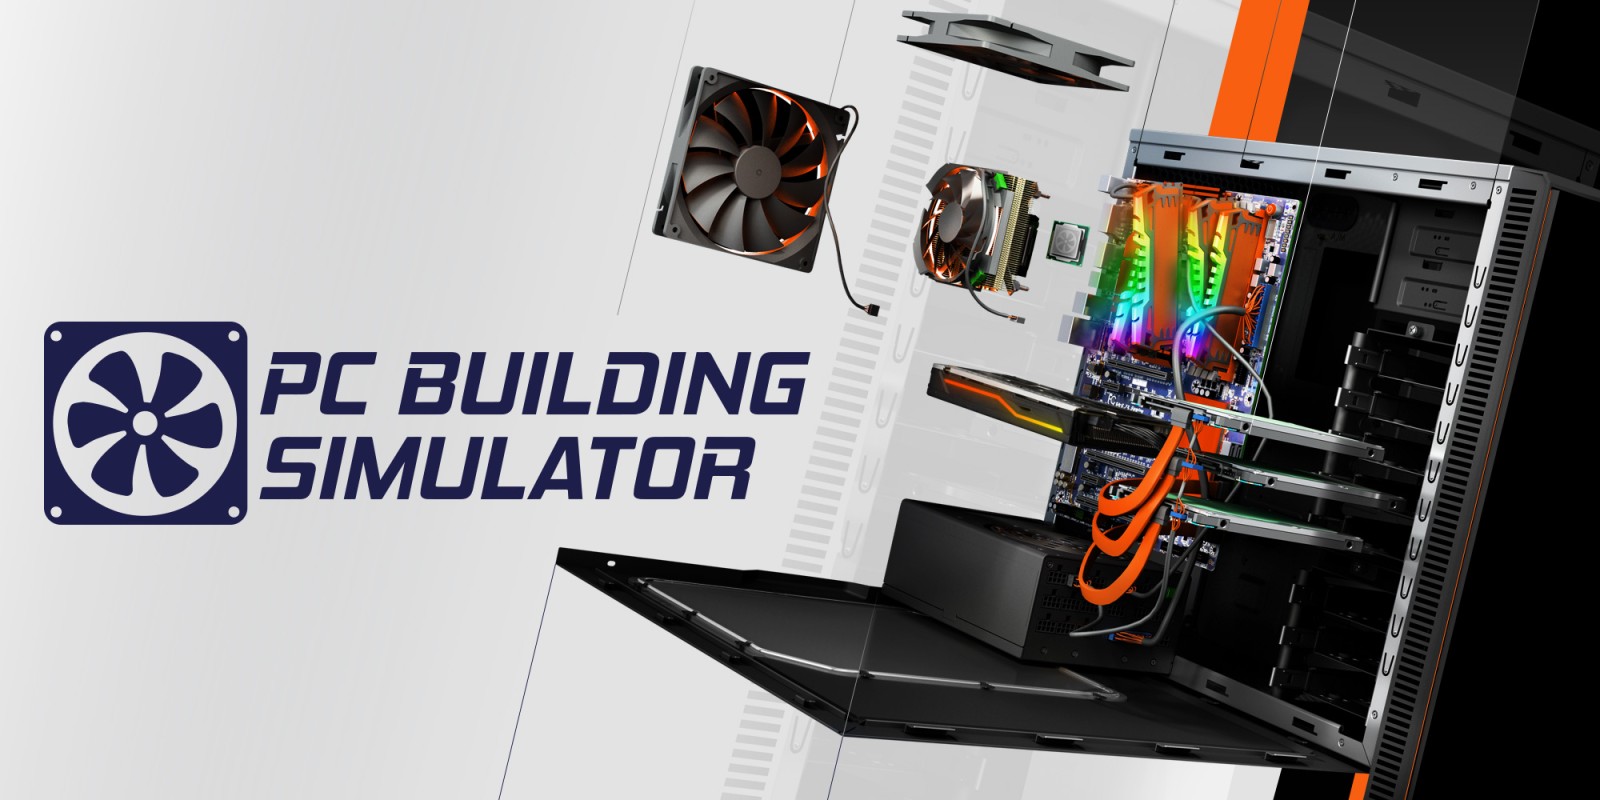 PC Building Simulator (Часть 1)